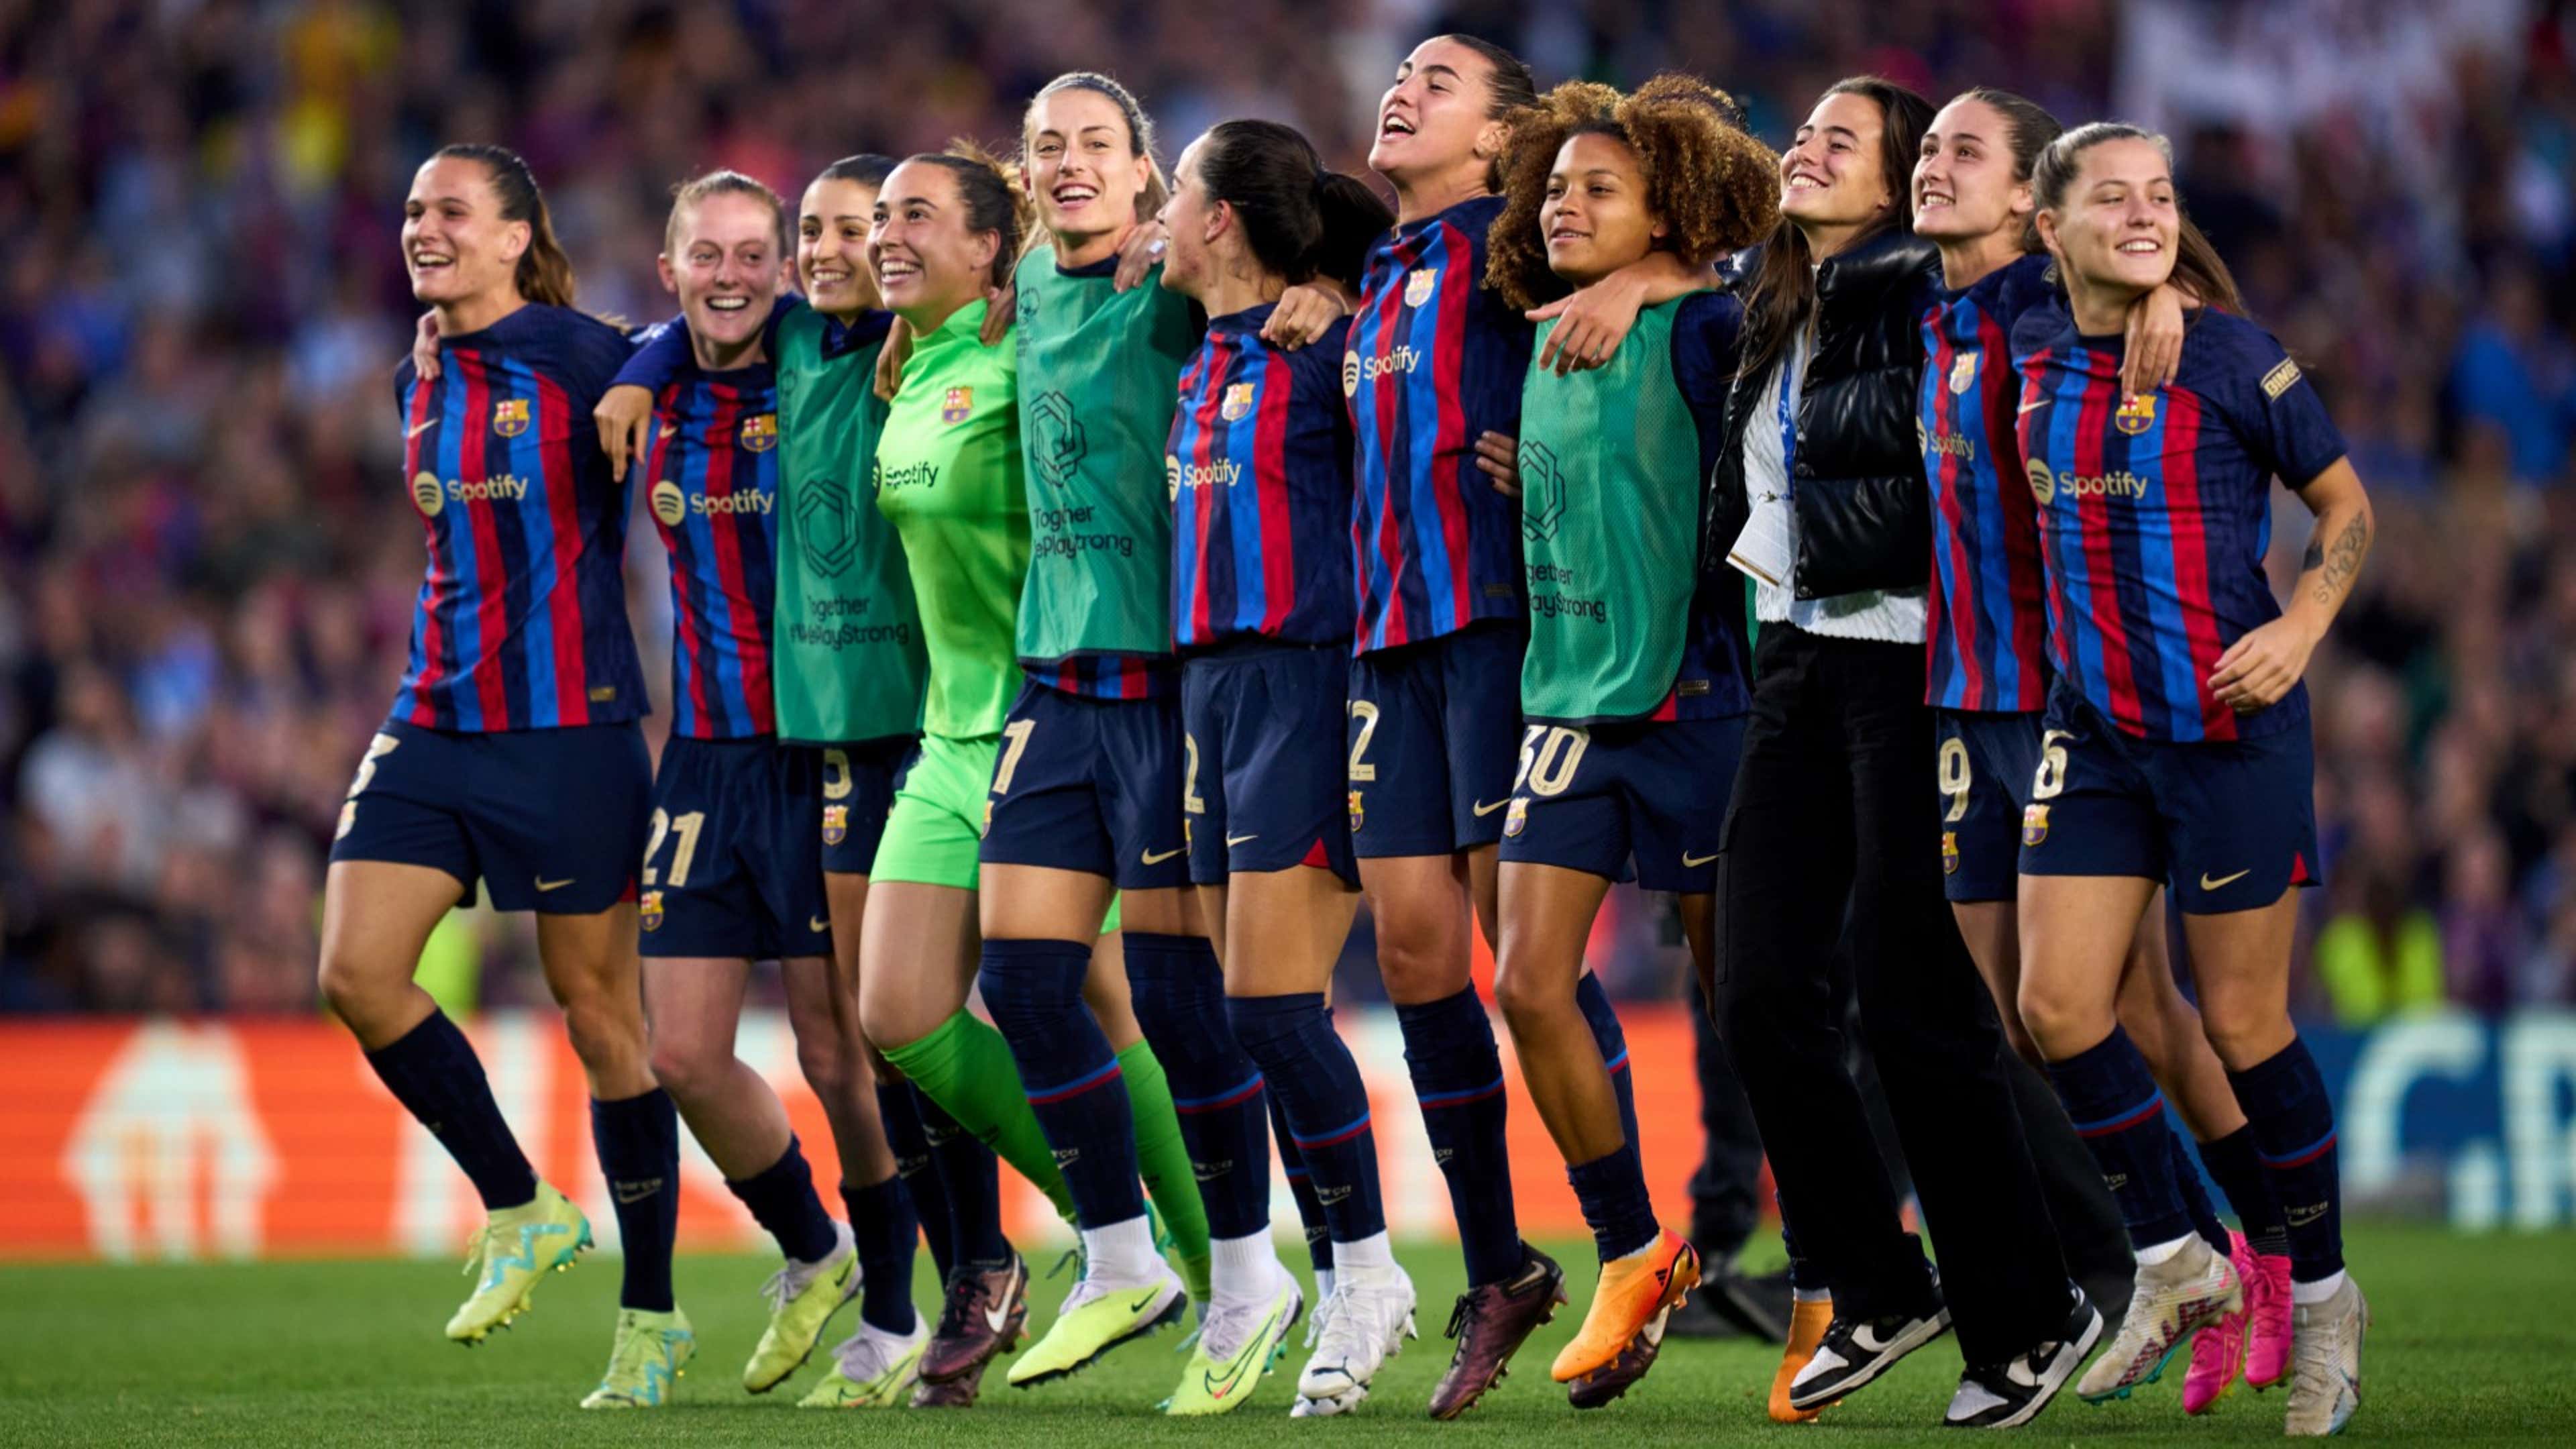 Virada no segundo tempo dá título da Champions League feminina ao Barcelona